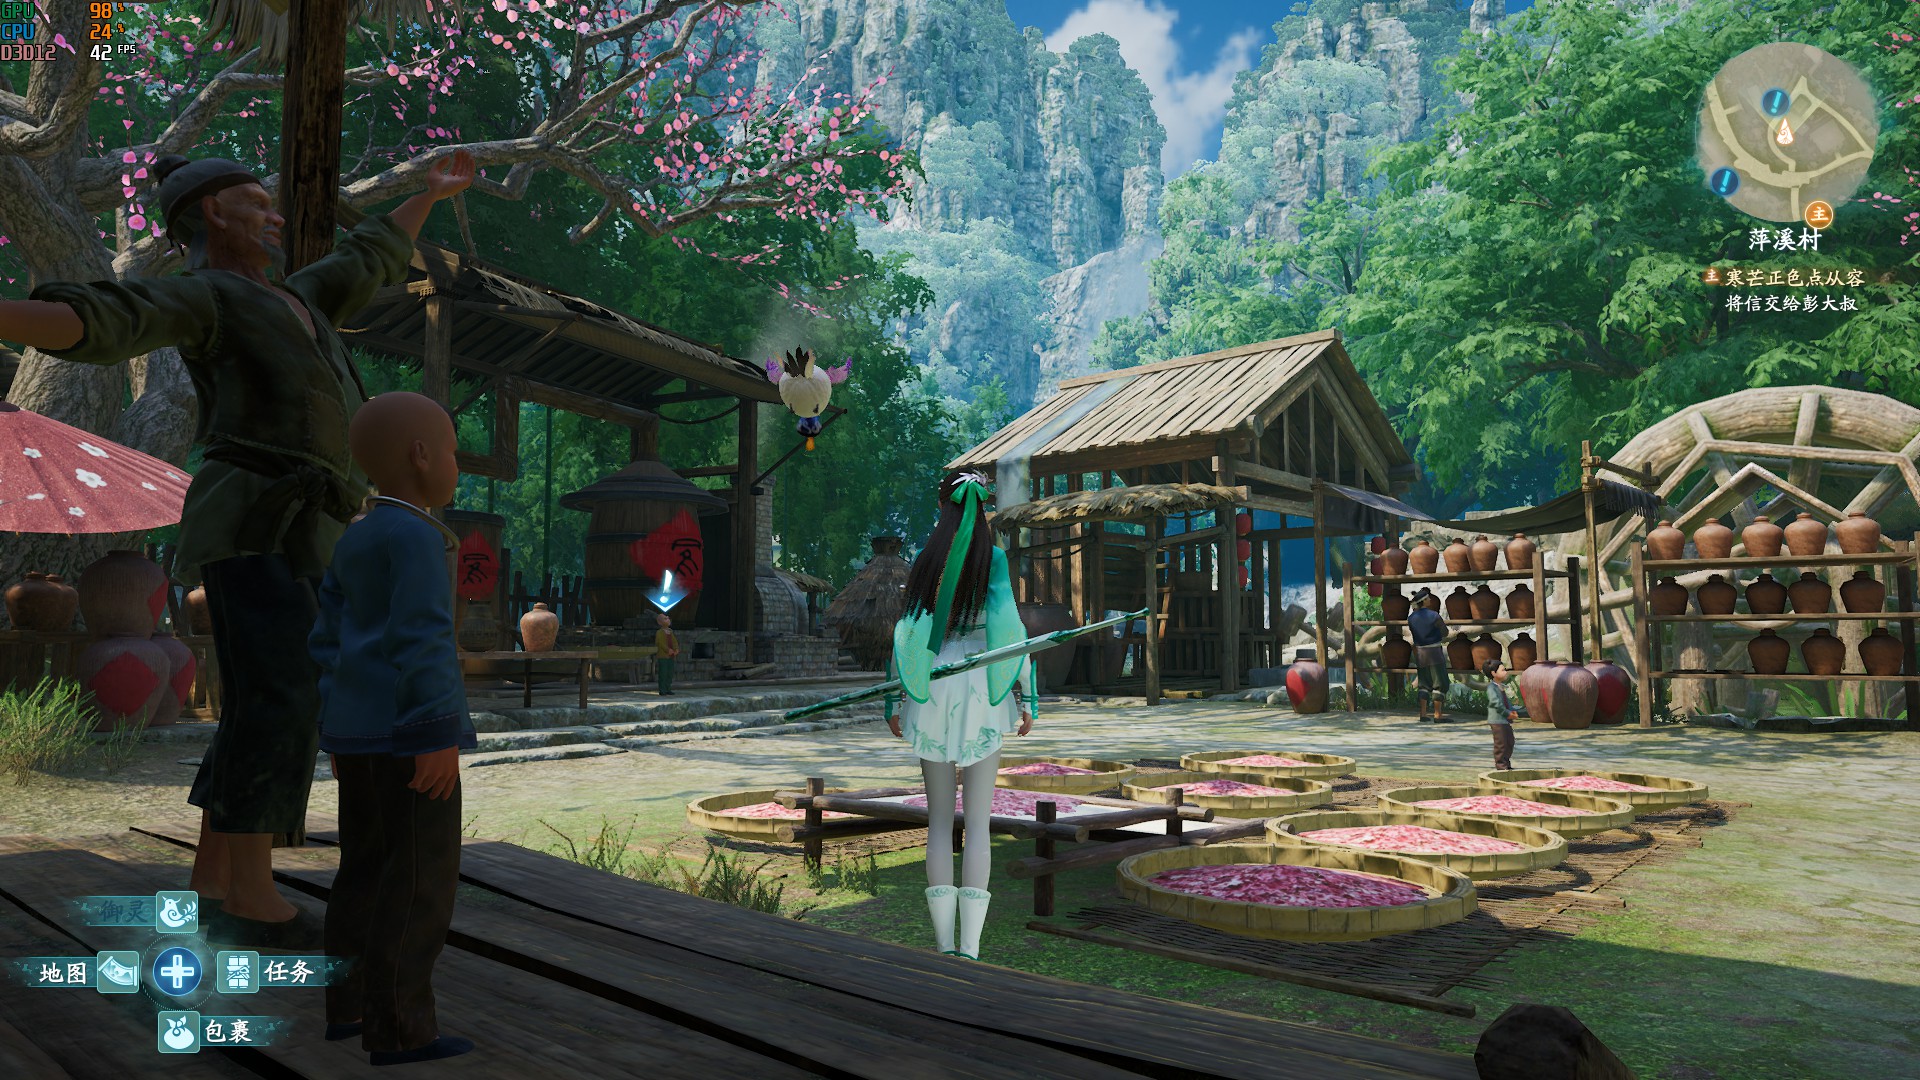 《仙剑奇侠传7》画面各项设置视觉效果对比 - 第20张